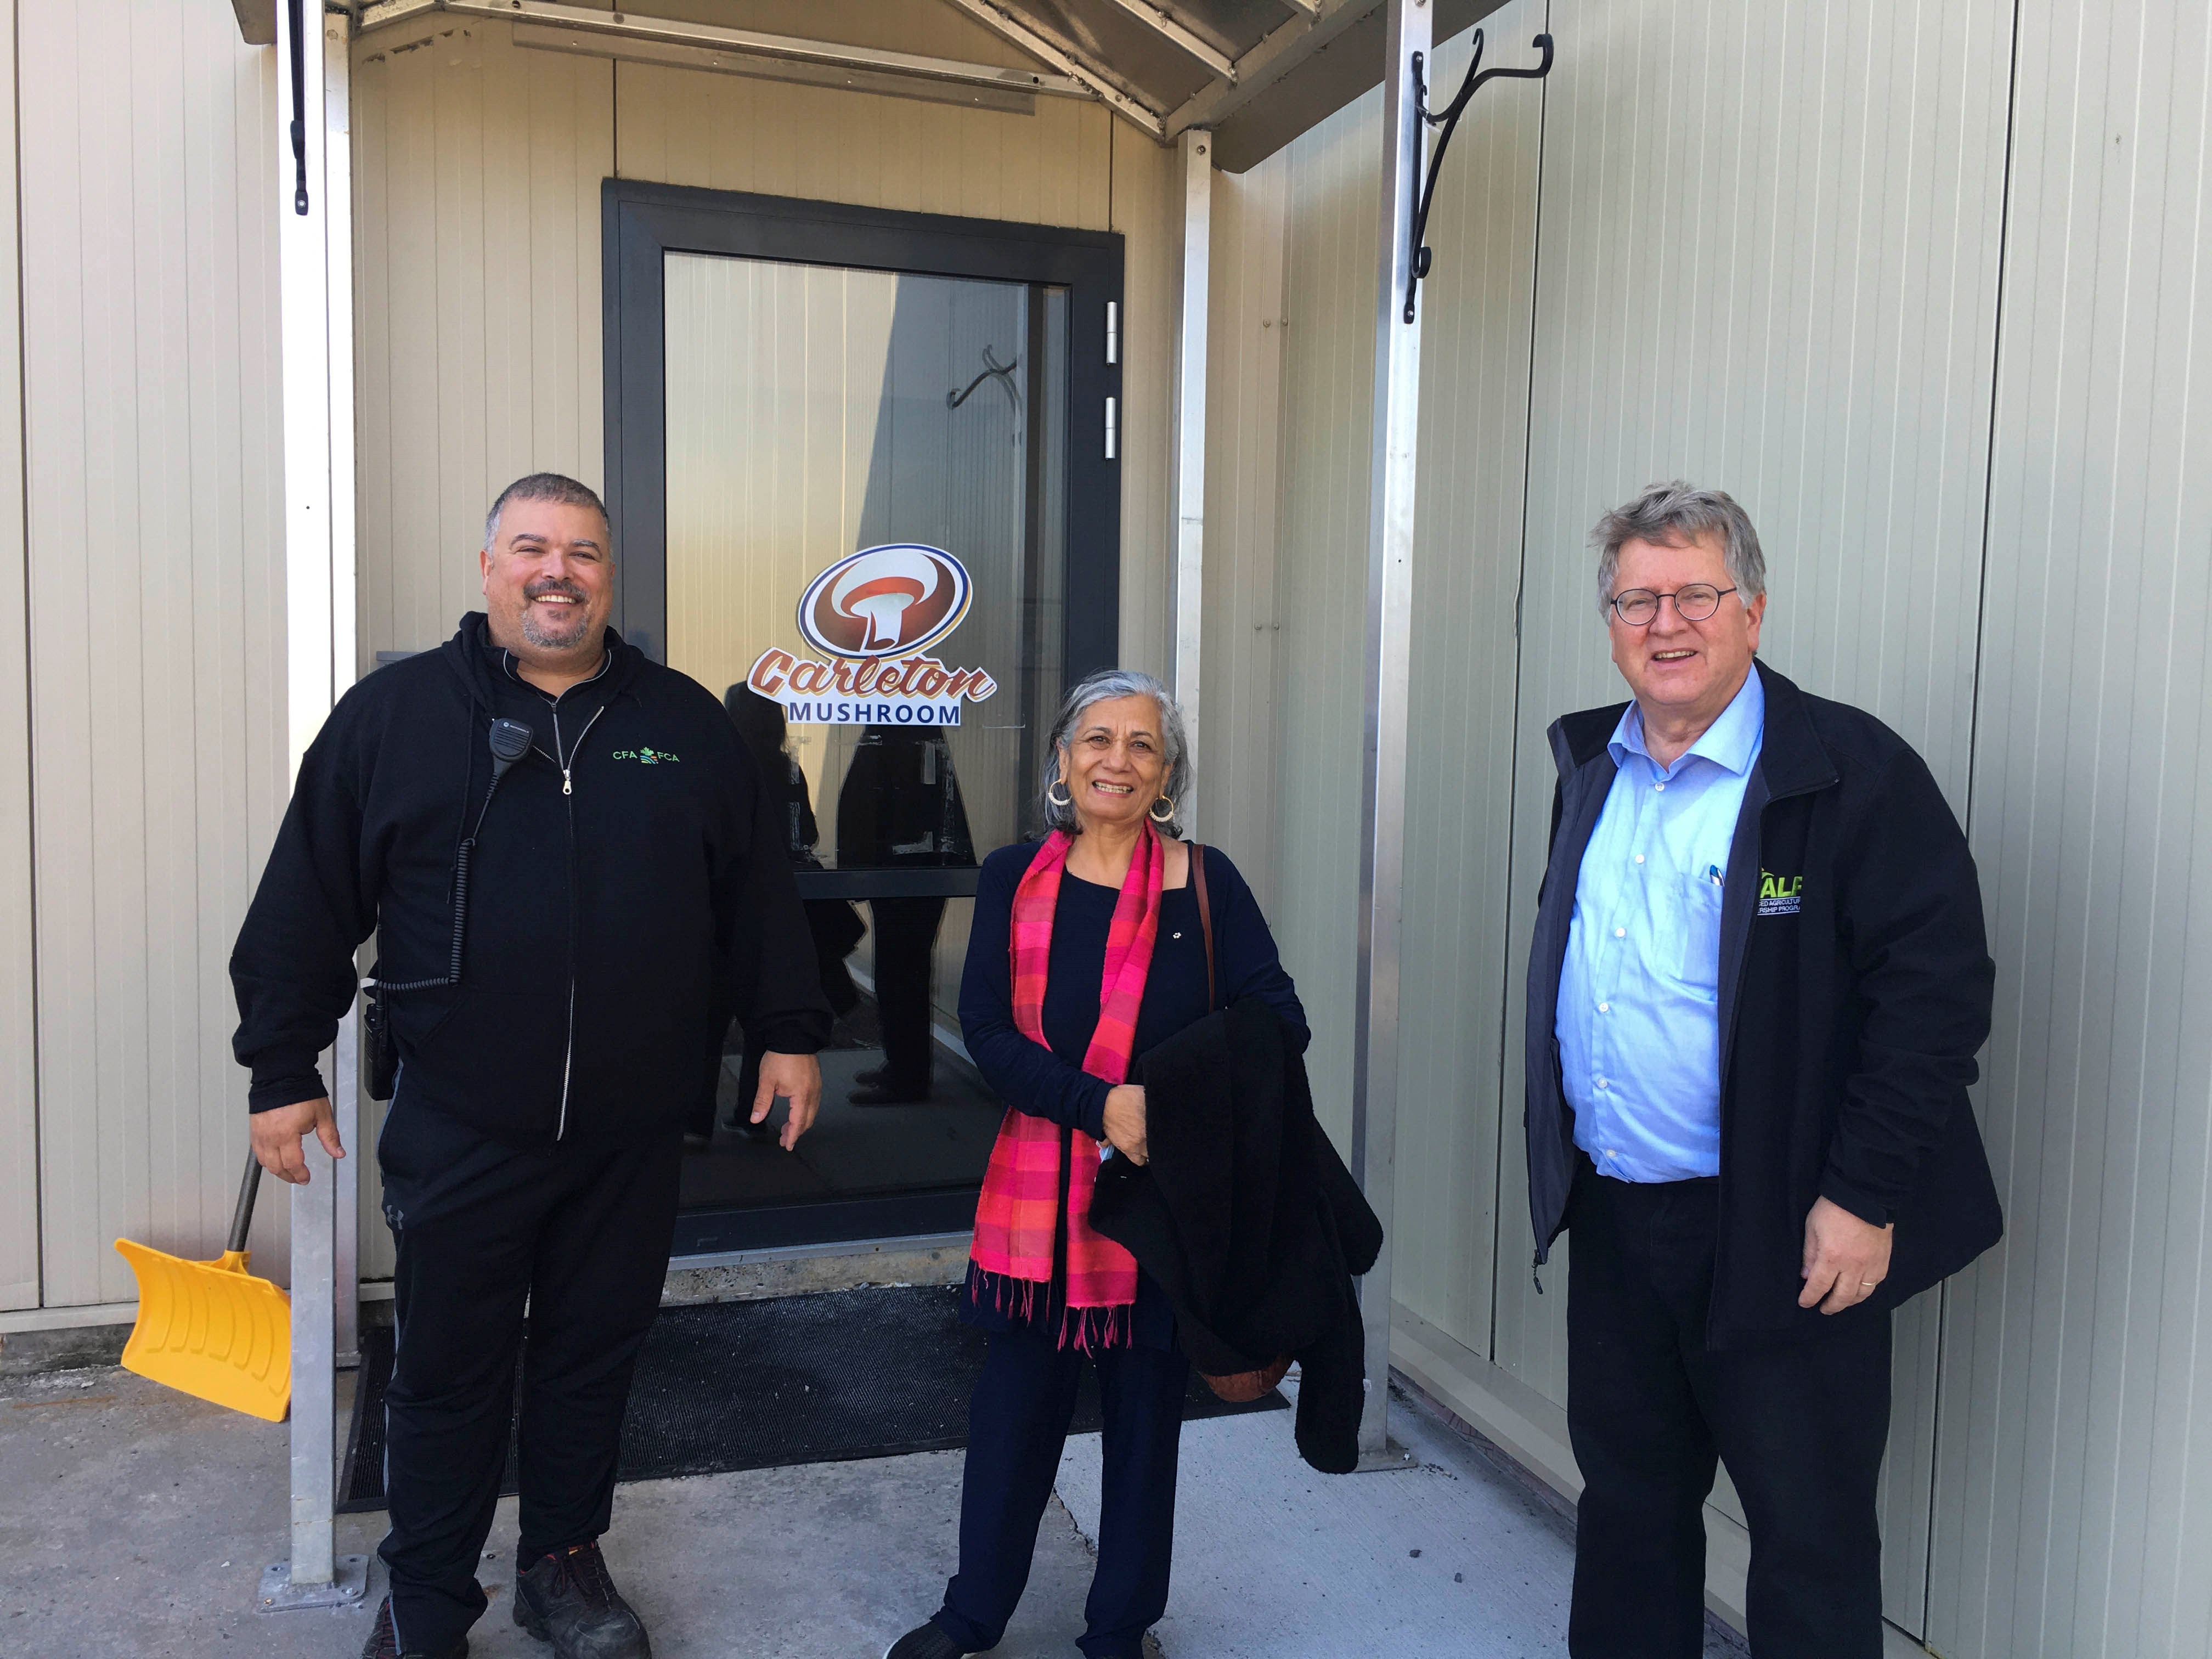 Le vendredi 29 avril 2022 — La sénatrice Ratna Omidvar (au centre) et le sénateur Rob Black (à droite) visitent les Carleton Mushroom Farms dans la région rurale d’Ottawa, pour en apprendre davantage sur les défis que doivent relever les producteurs de champignons du Canada et les possibilités qui s’offrent à eux.